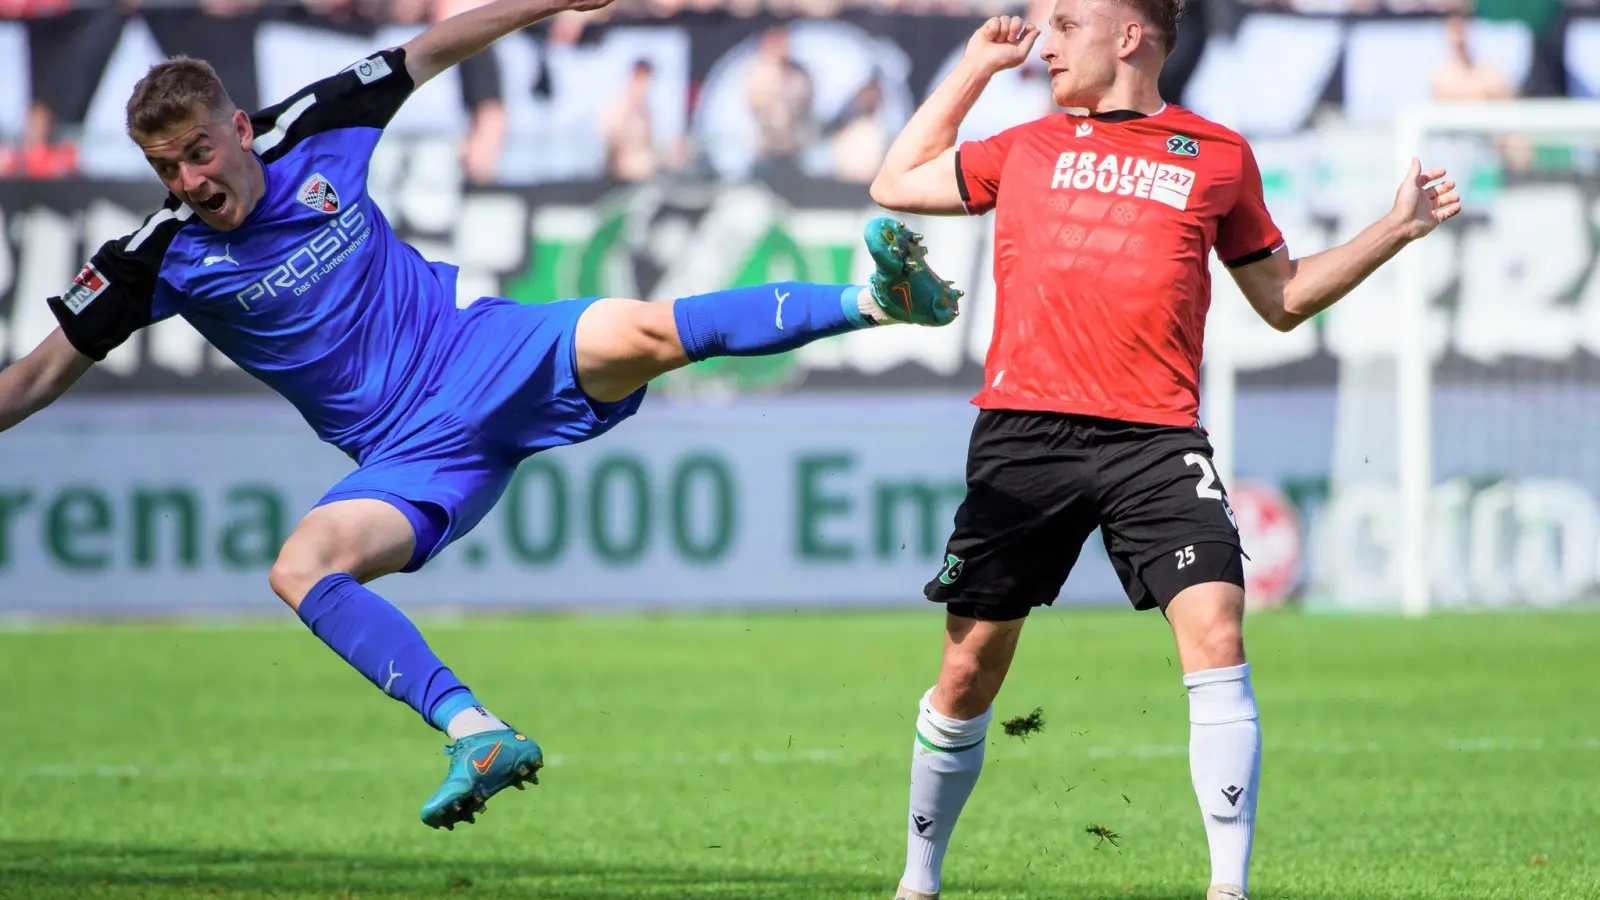 Der Ingolstädter Andreas Poulsen (l) kommt gegen Jannik Dehm vom Hannover 96 zu Fall. (Foto: Gregor Fischer/dpa)